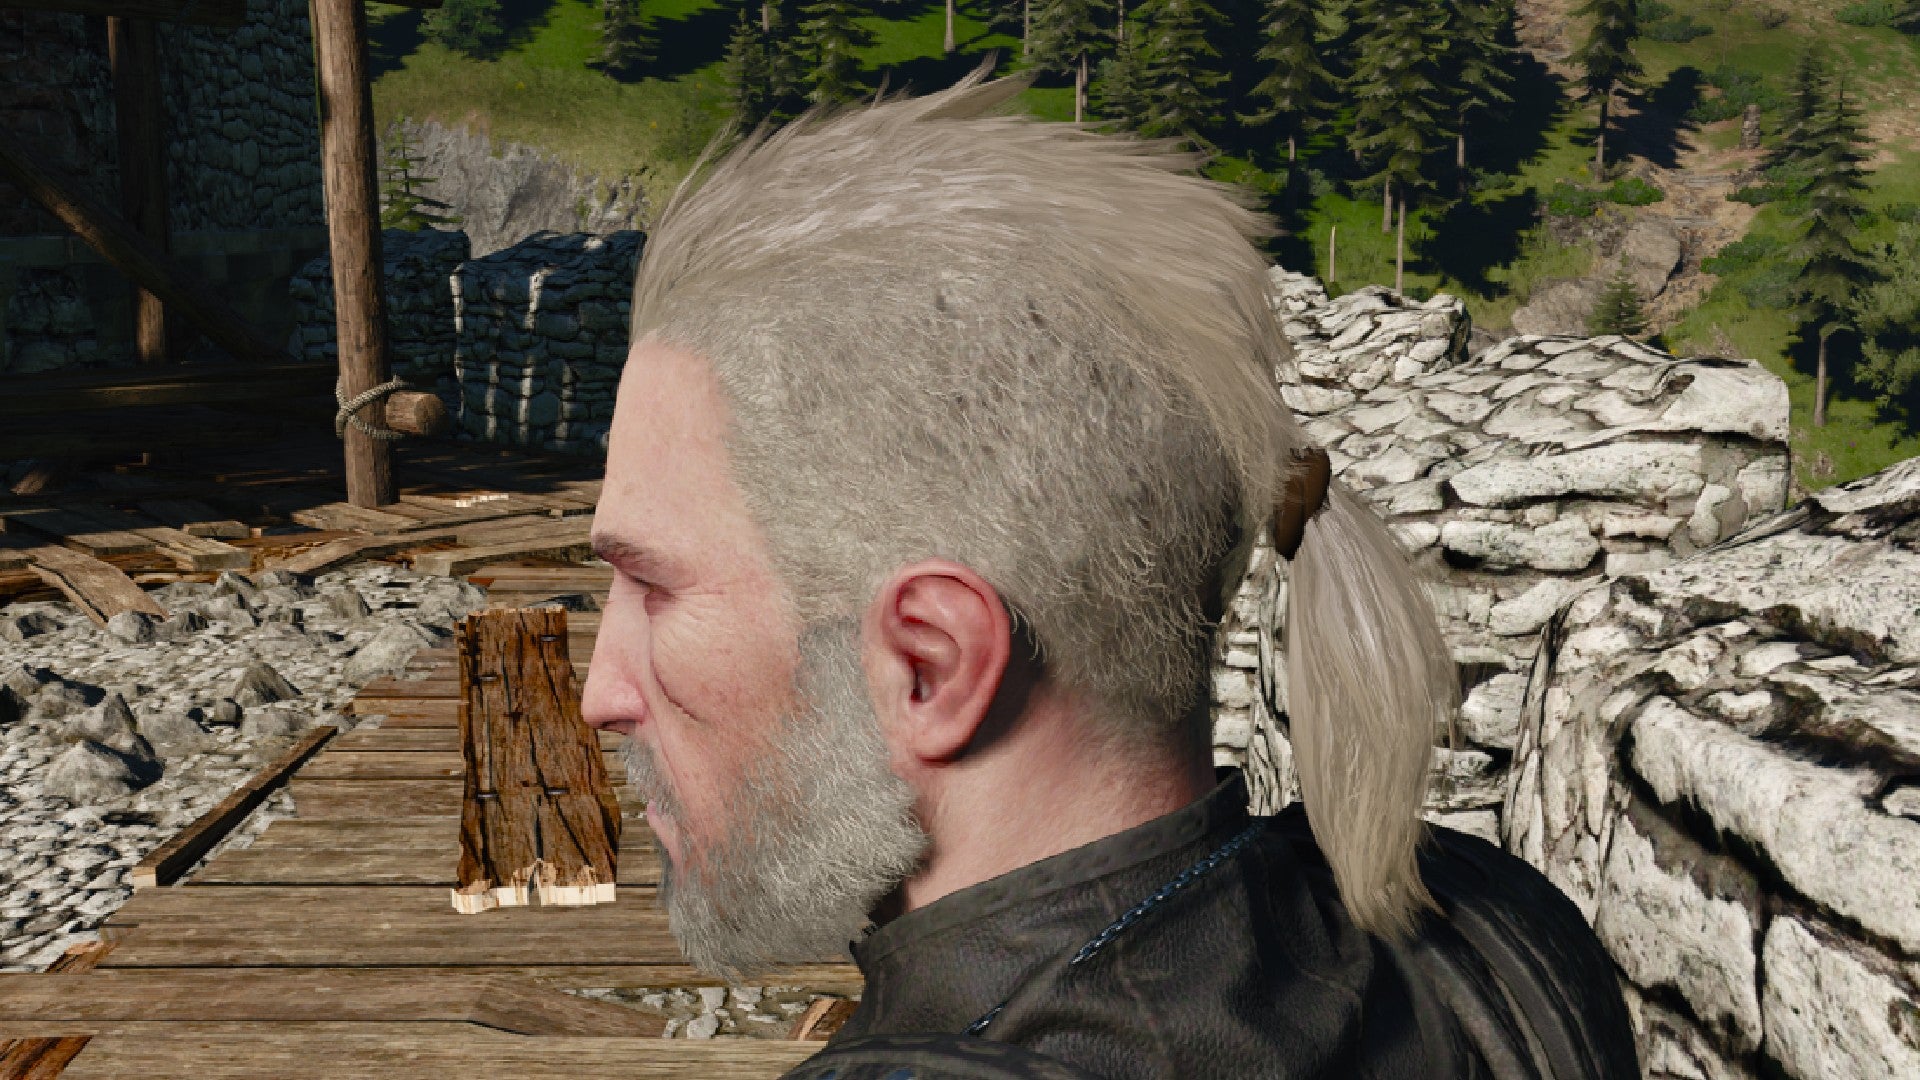 Captura de pantalla de Witcher 3 que muestra el corte de pelo mohawk y cola de caballo de Geralt desde un lado.